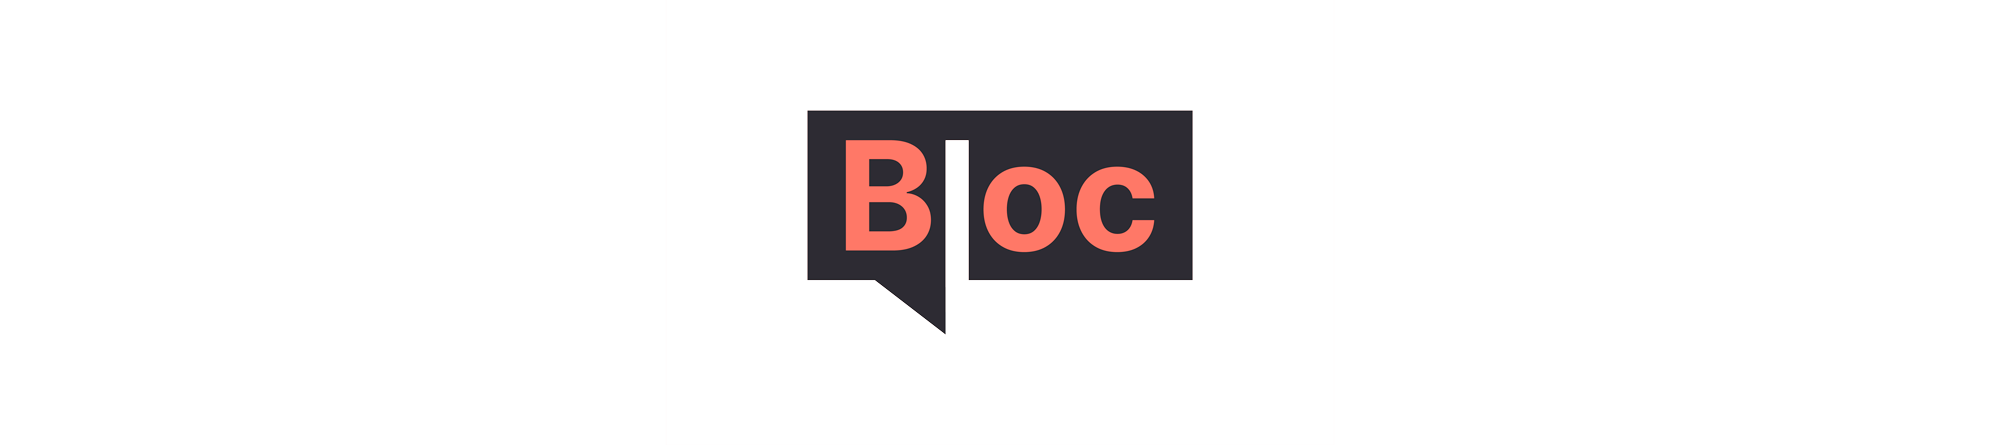 Logo_Bloc_TV_2